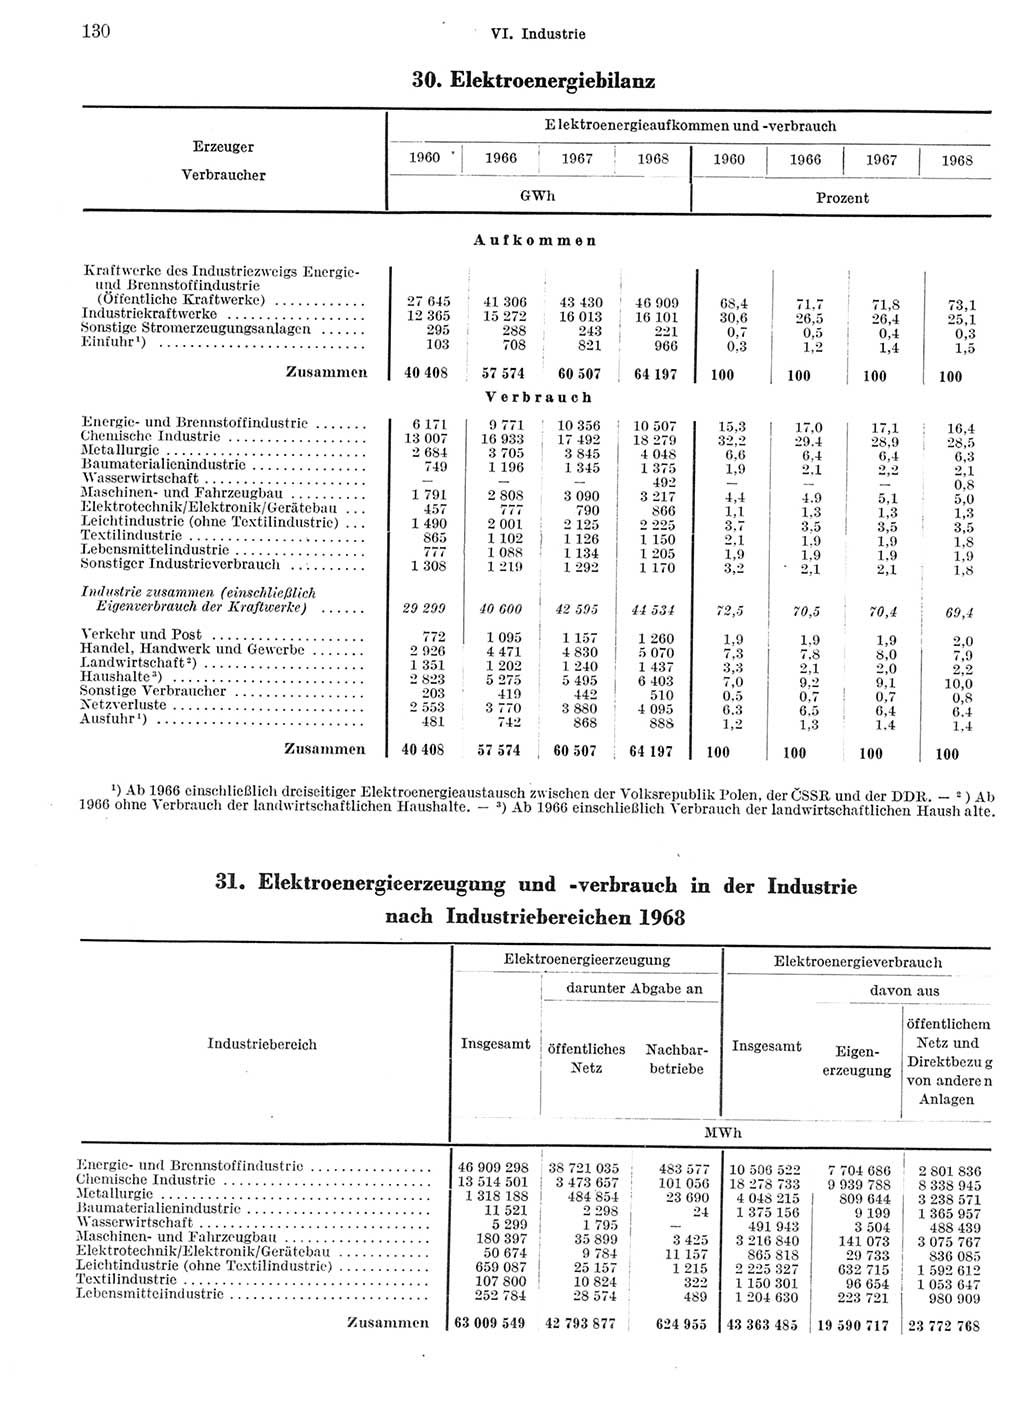 Statistisches Jahrbuch der Deutschen Demokratischen Republik (DDR) 1969, Seite 130 (Stat. Jb. DDR 1969, S. 130)